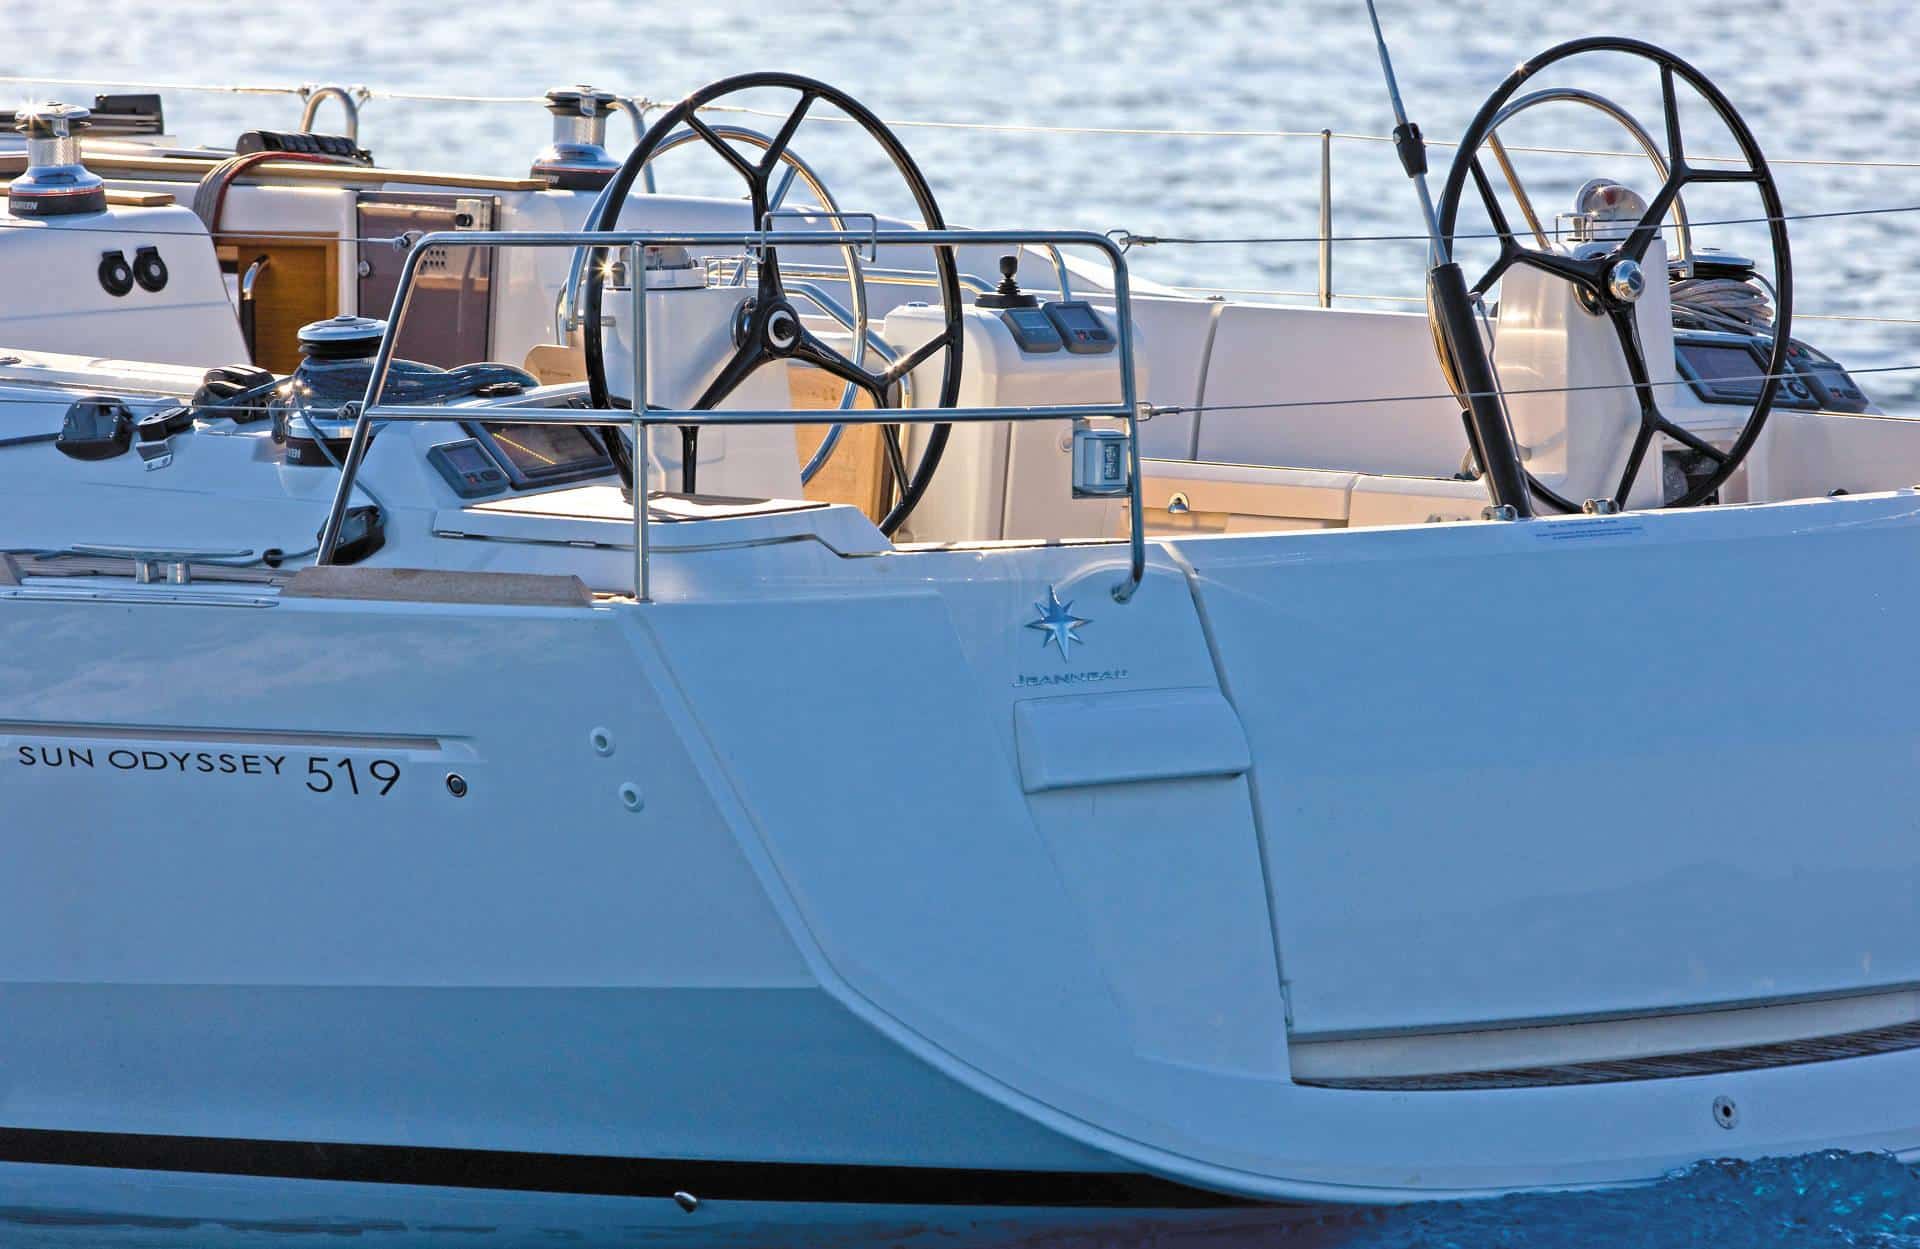 Rückansicht einer weißen Sun Odyssey 519 Segelyacht auf blauem Wasser. Zu sehen sind zwei Steuerräder und der Name des Bootes am Heck.